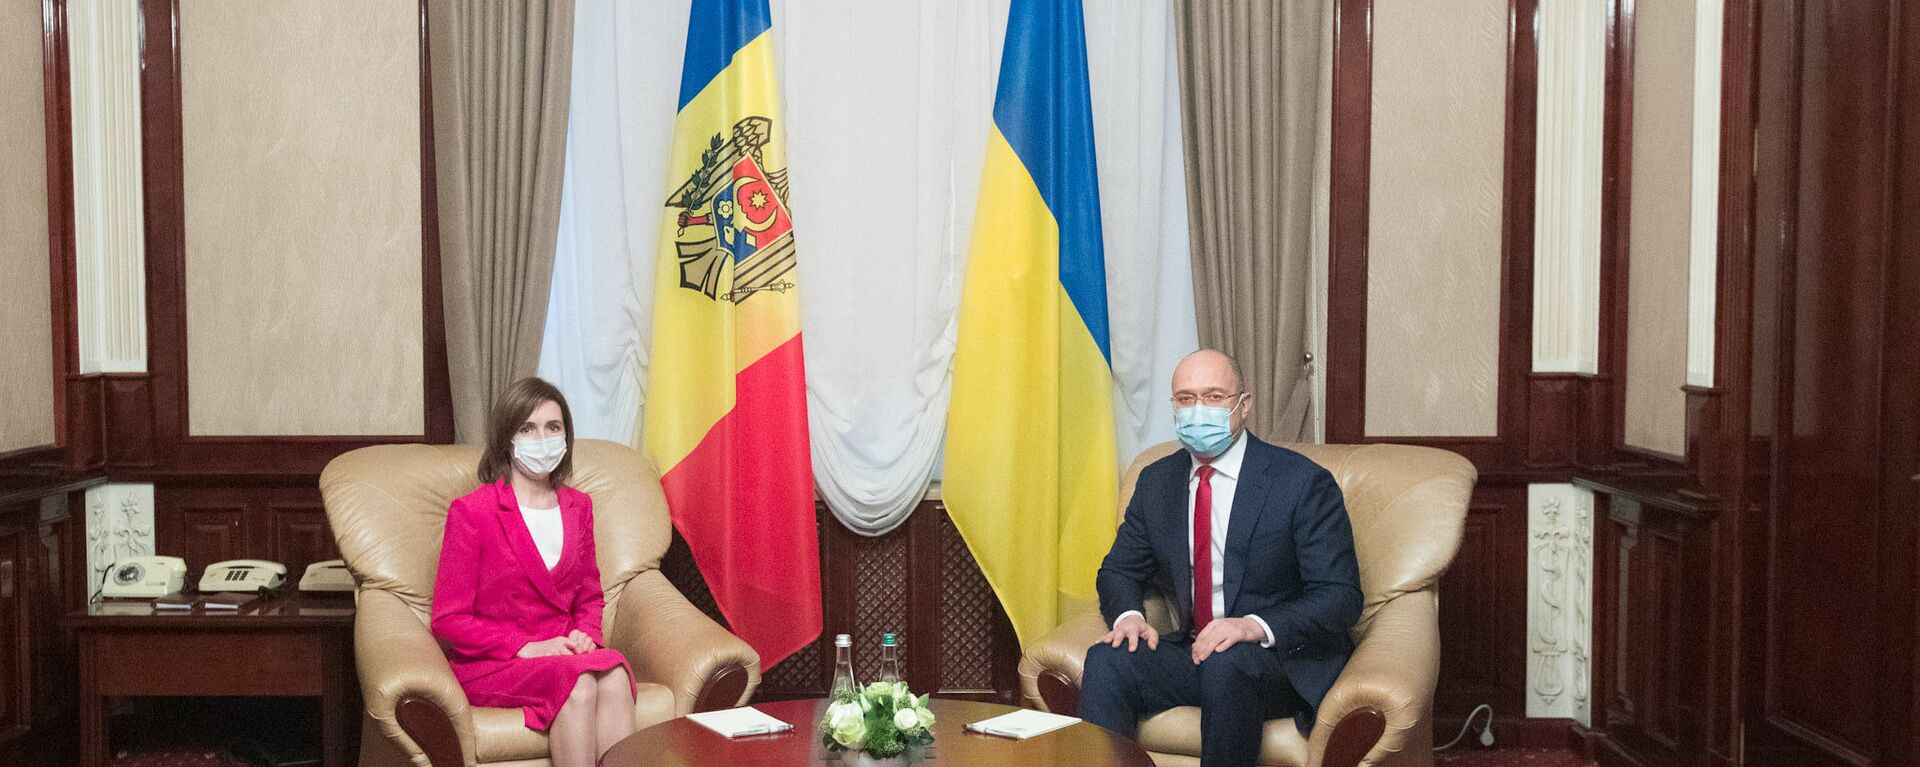  Întâlnirea președintelui Republicii Moldova, Maia Sandu, cu premierul ucrainean, Denis Shmygal - Sputnik Молдова, 1920, 12.01.2021